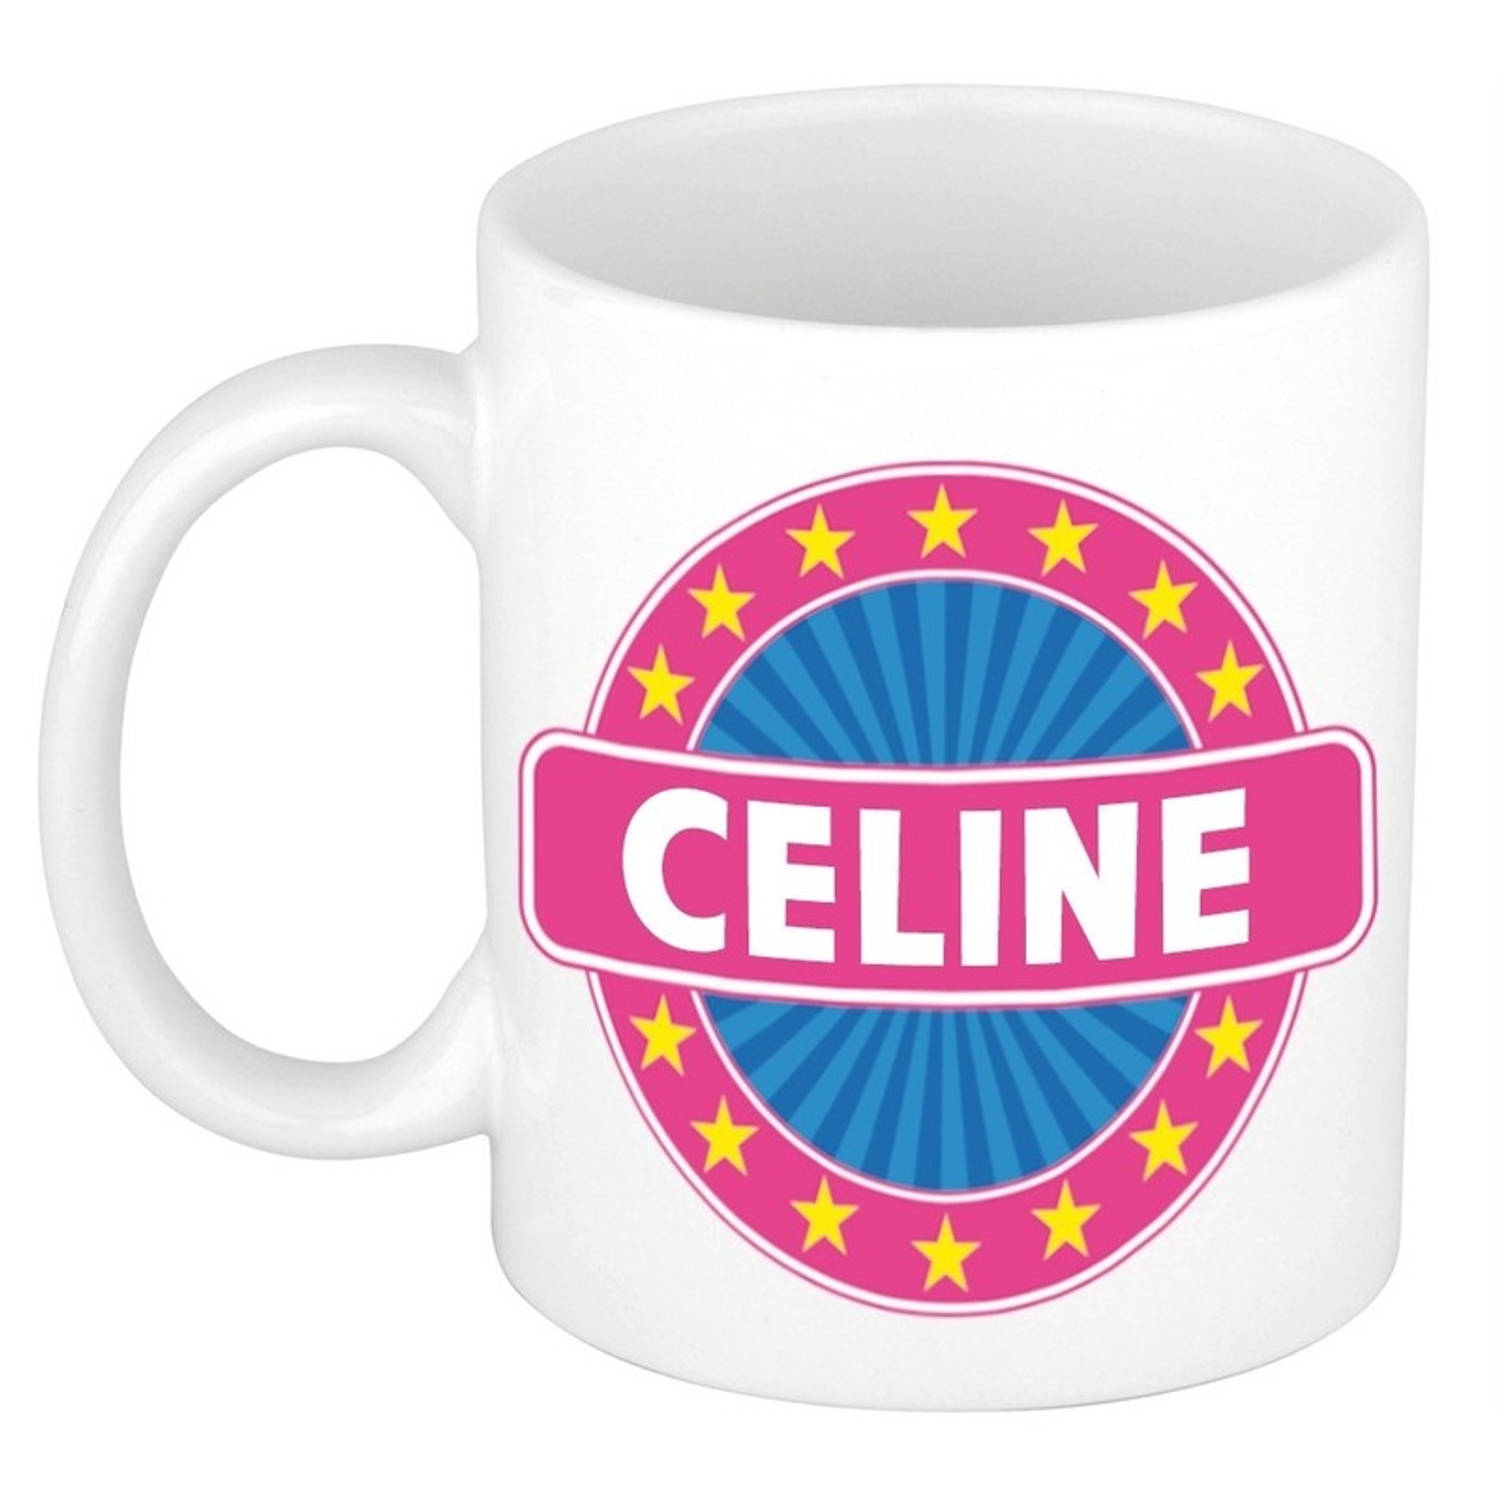 Celine naam koffie mok-beker 300 ml namen mokken